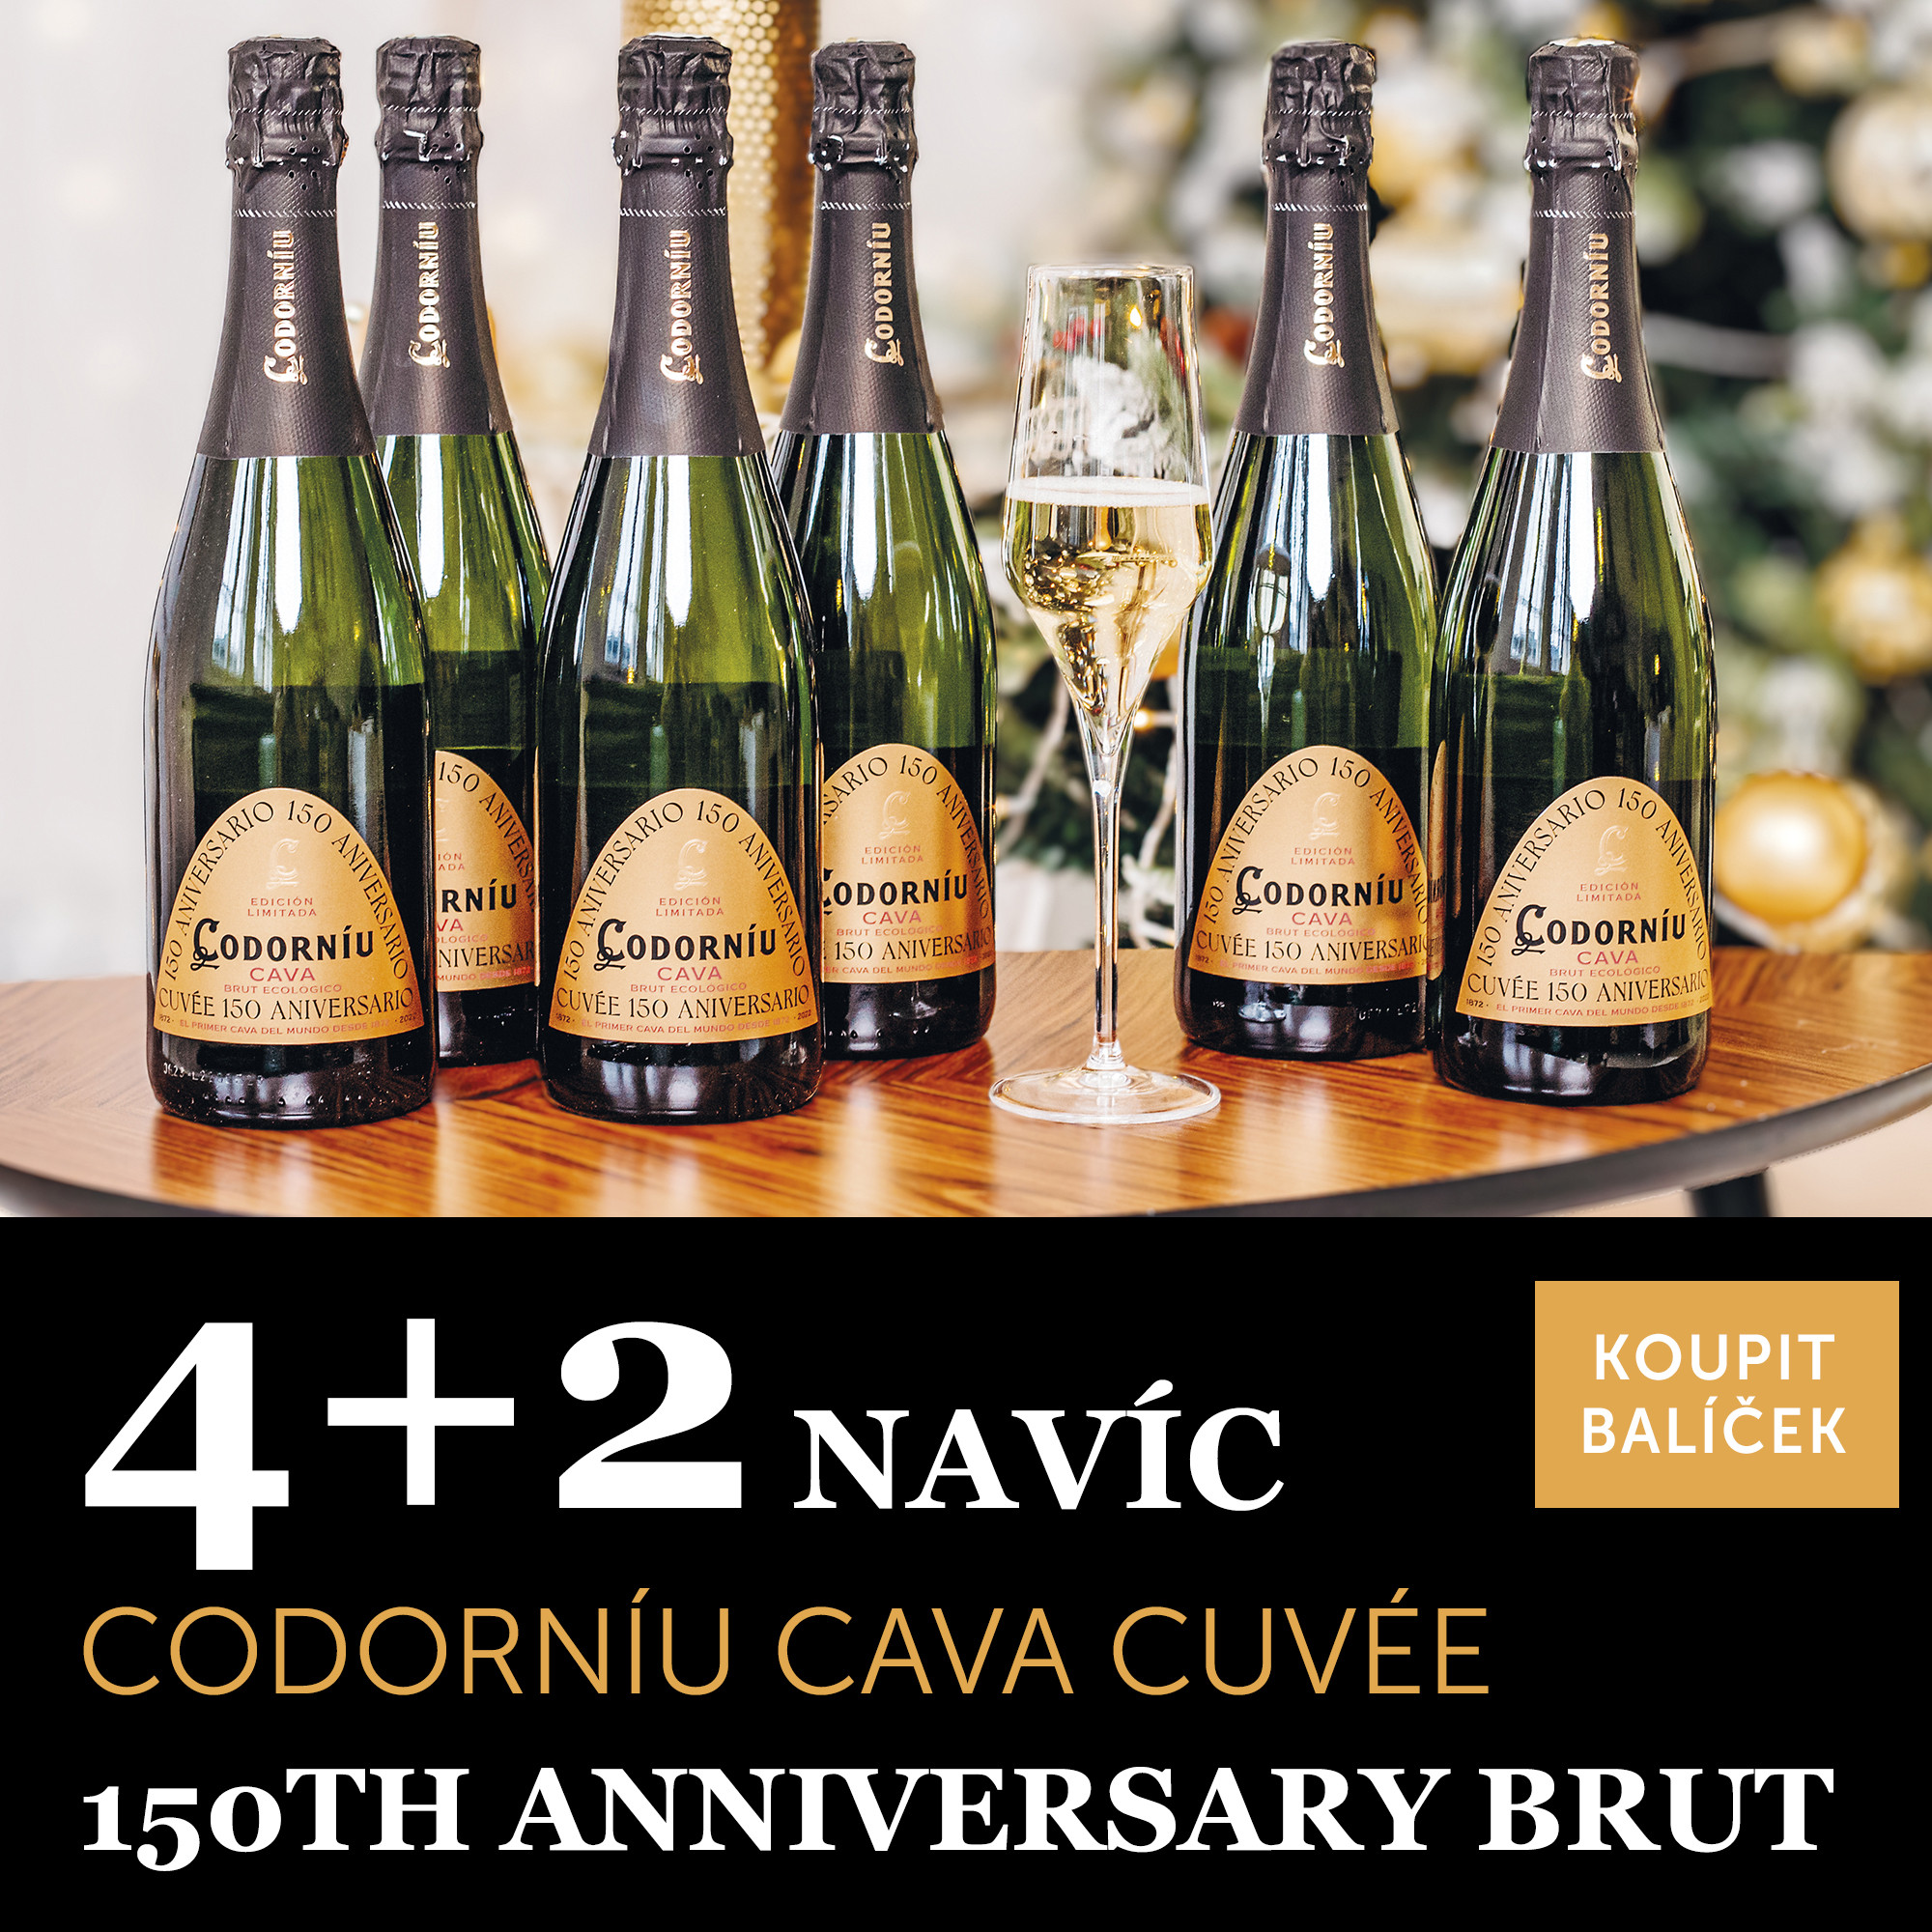 Víno měsíce prosince Cava Cuvée 150th Anniversary brut 4+2 navíc - UKONČENO